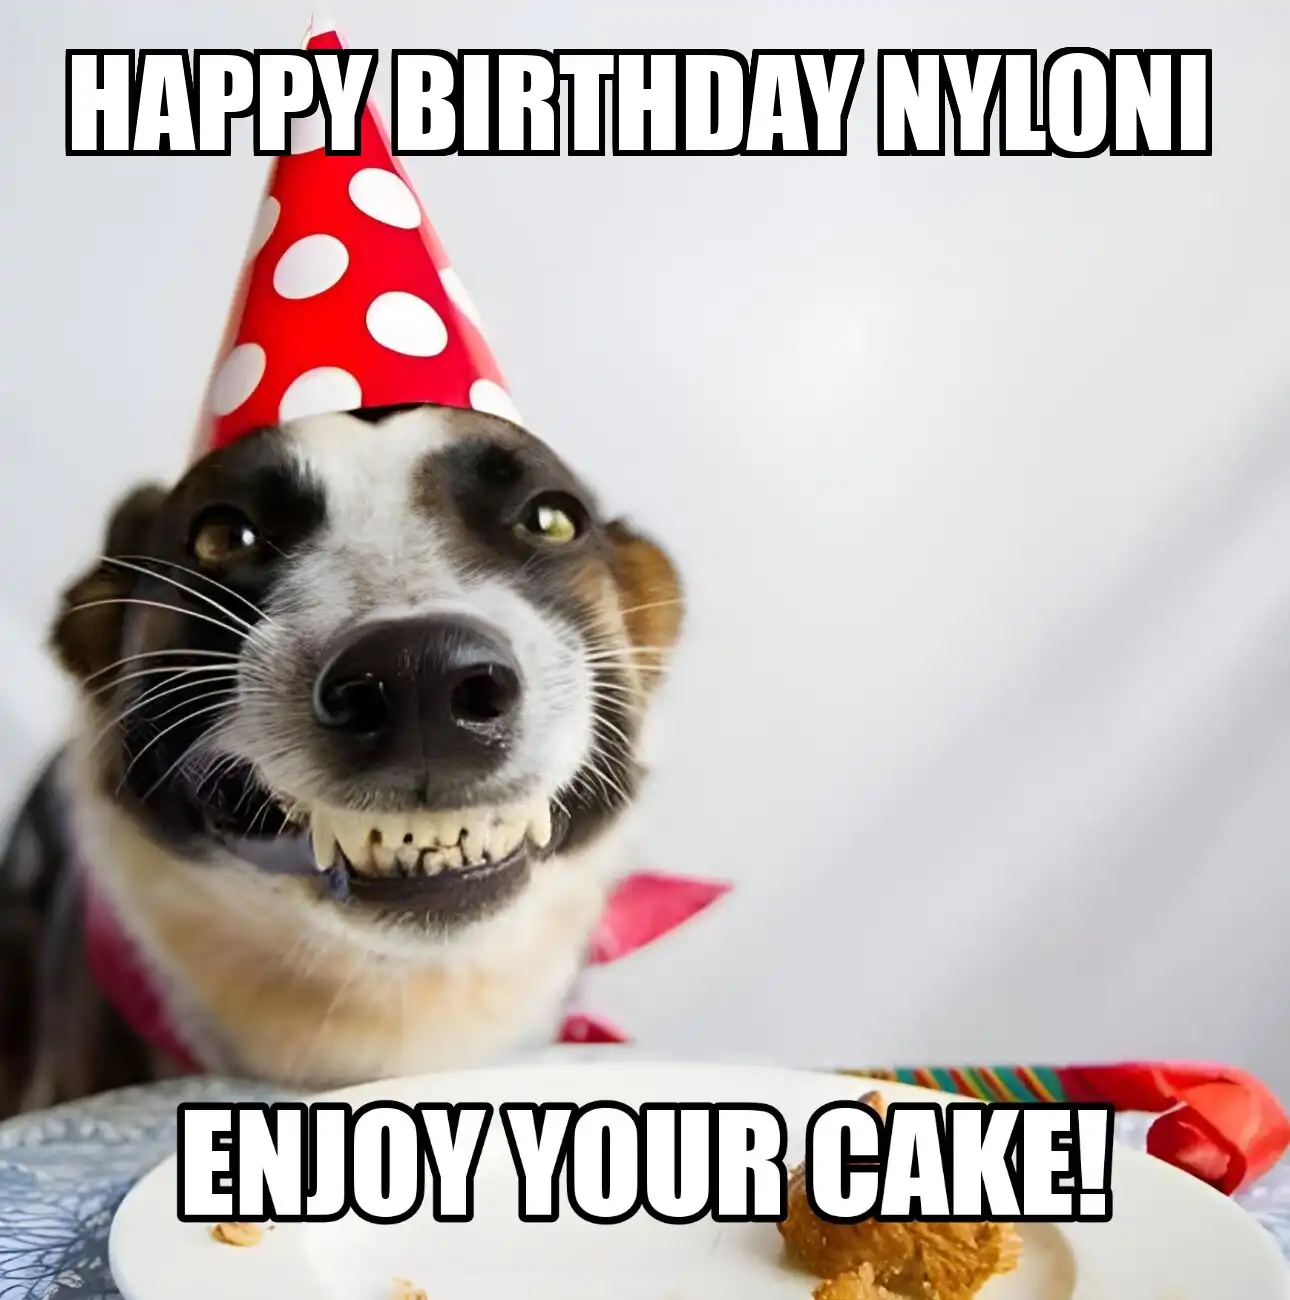 Happy Birthday Nyloni Enjoy Your Cake Dog Meme